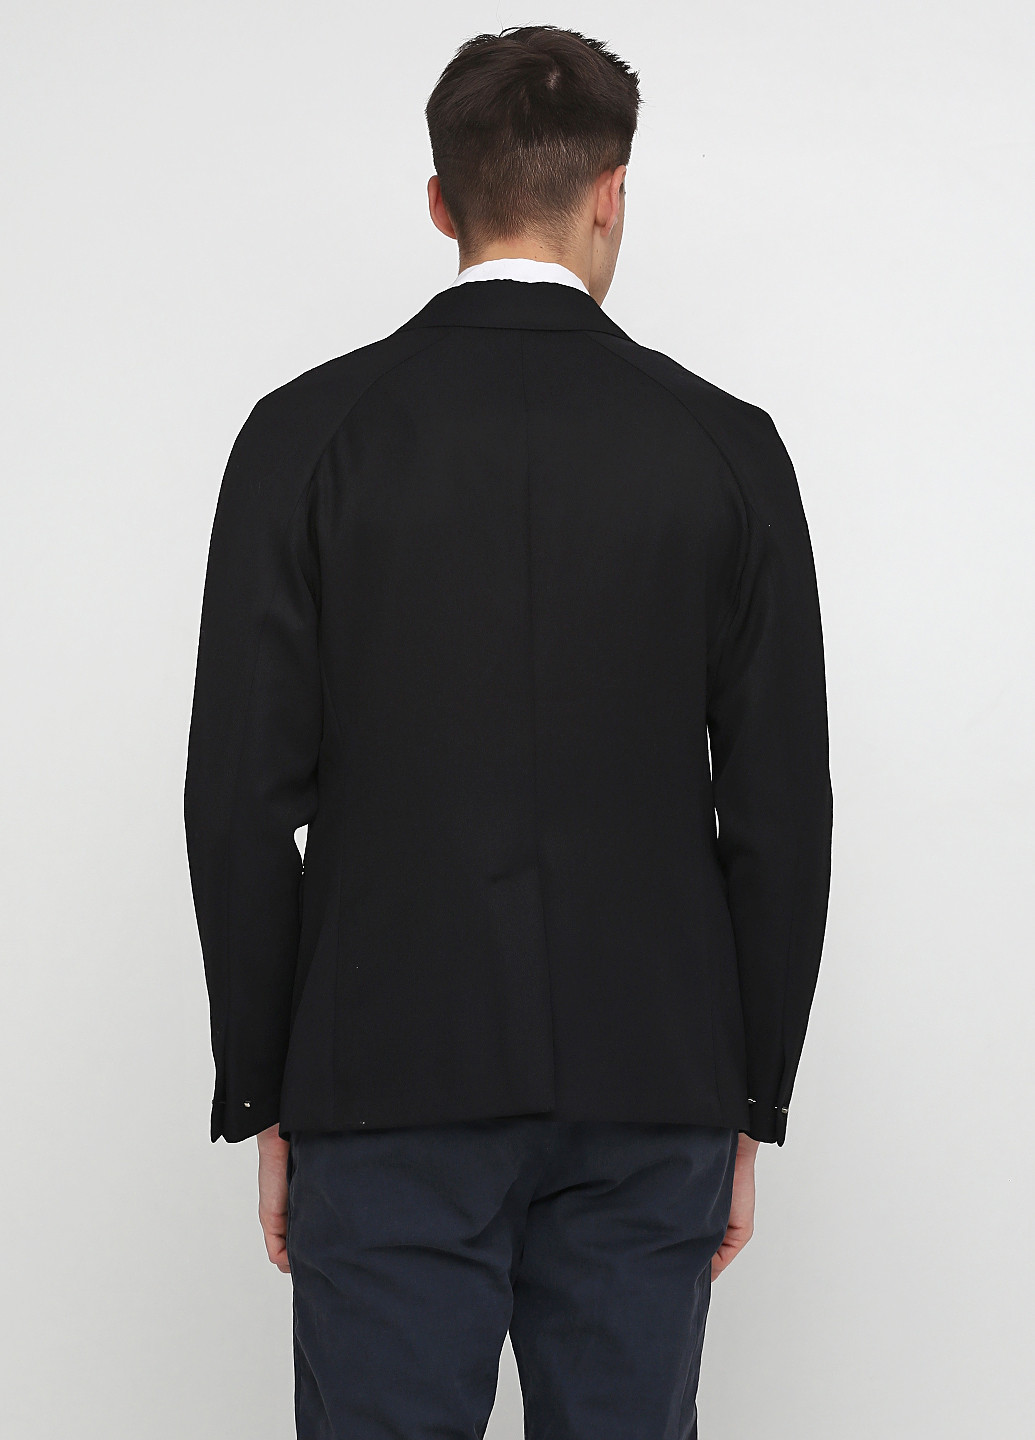 Пиджак Accademia с длинным рукавом однотонный чёрный деловой